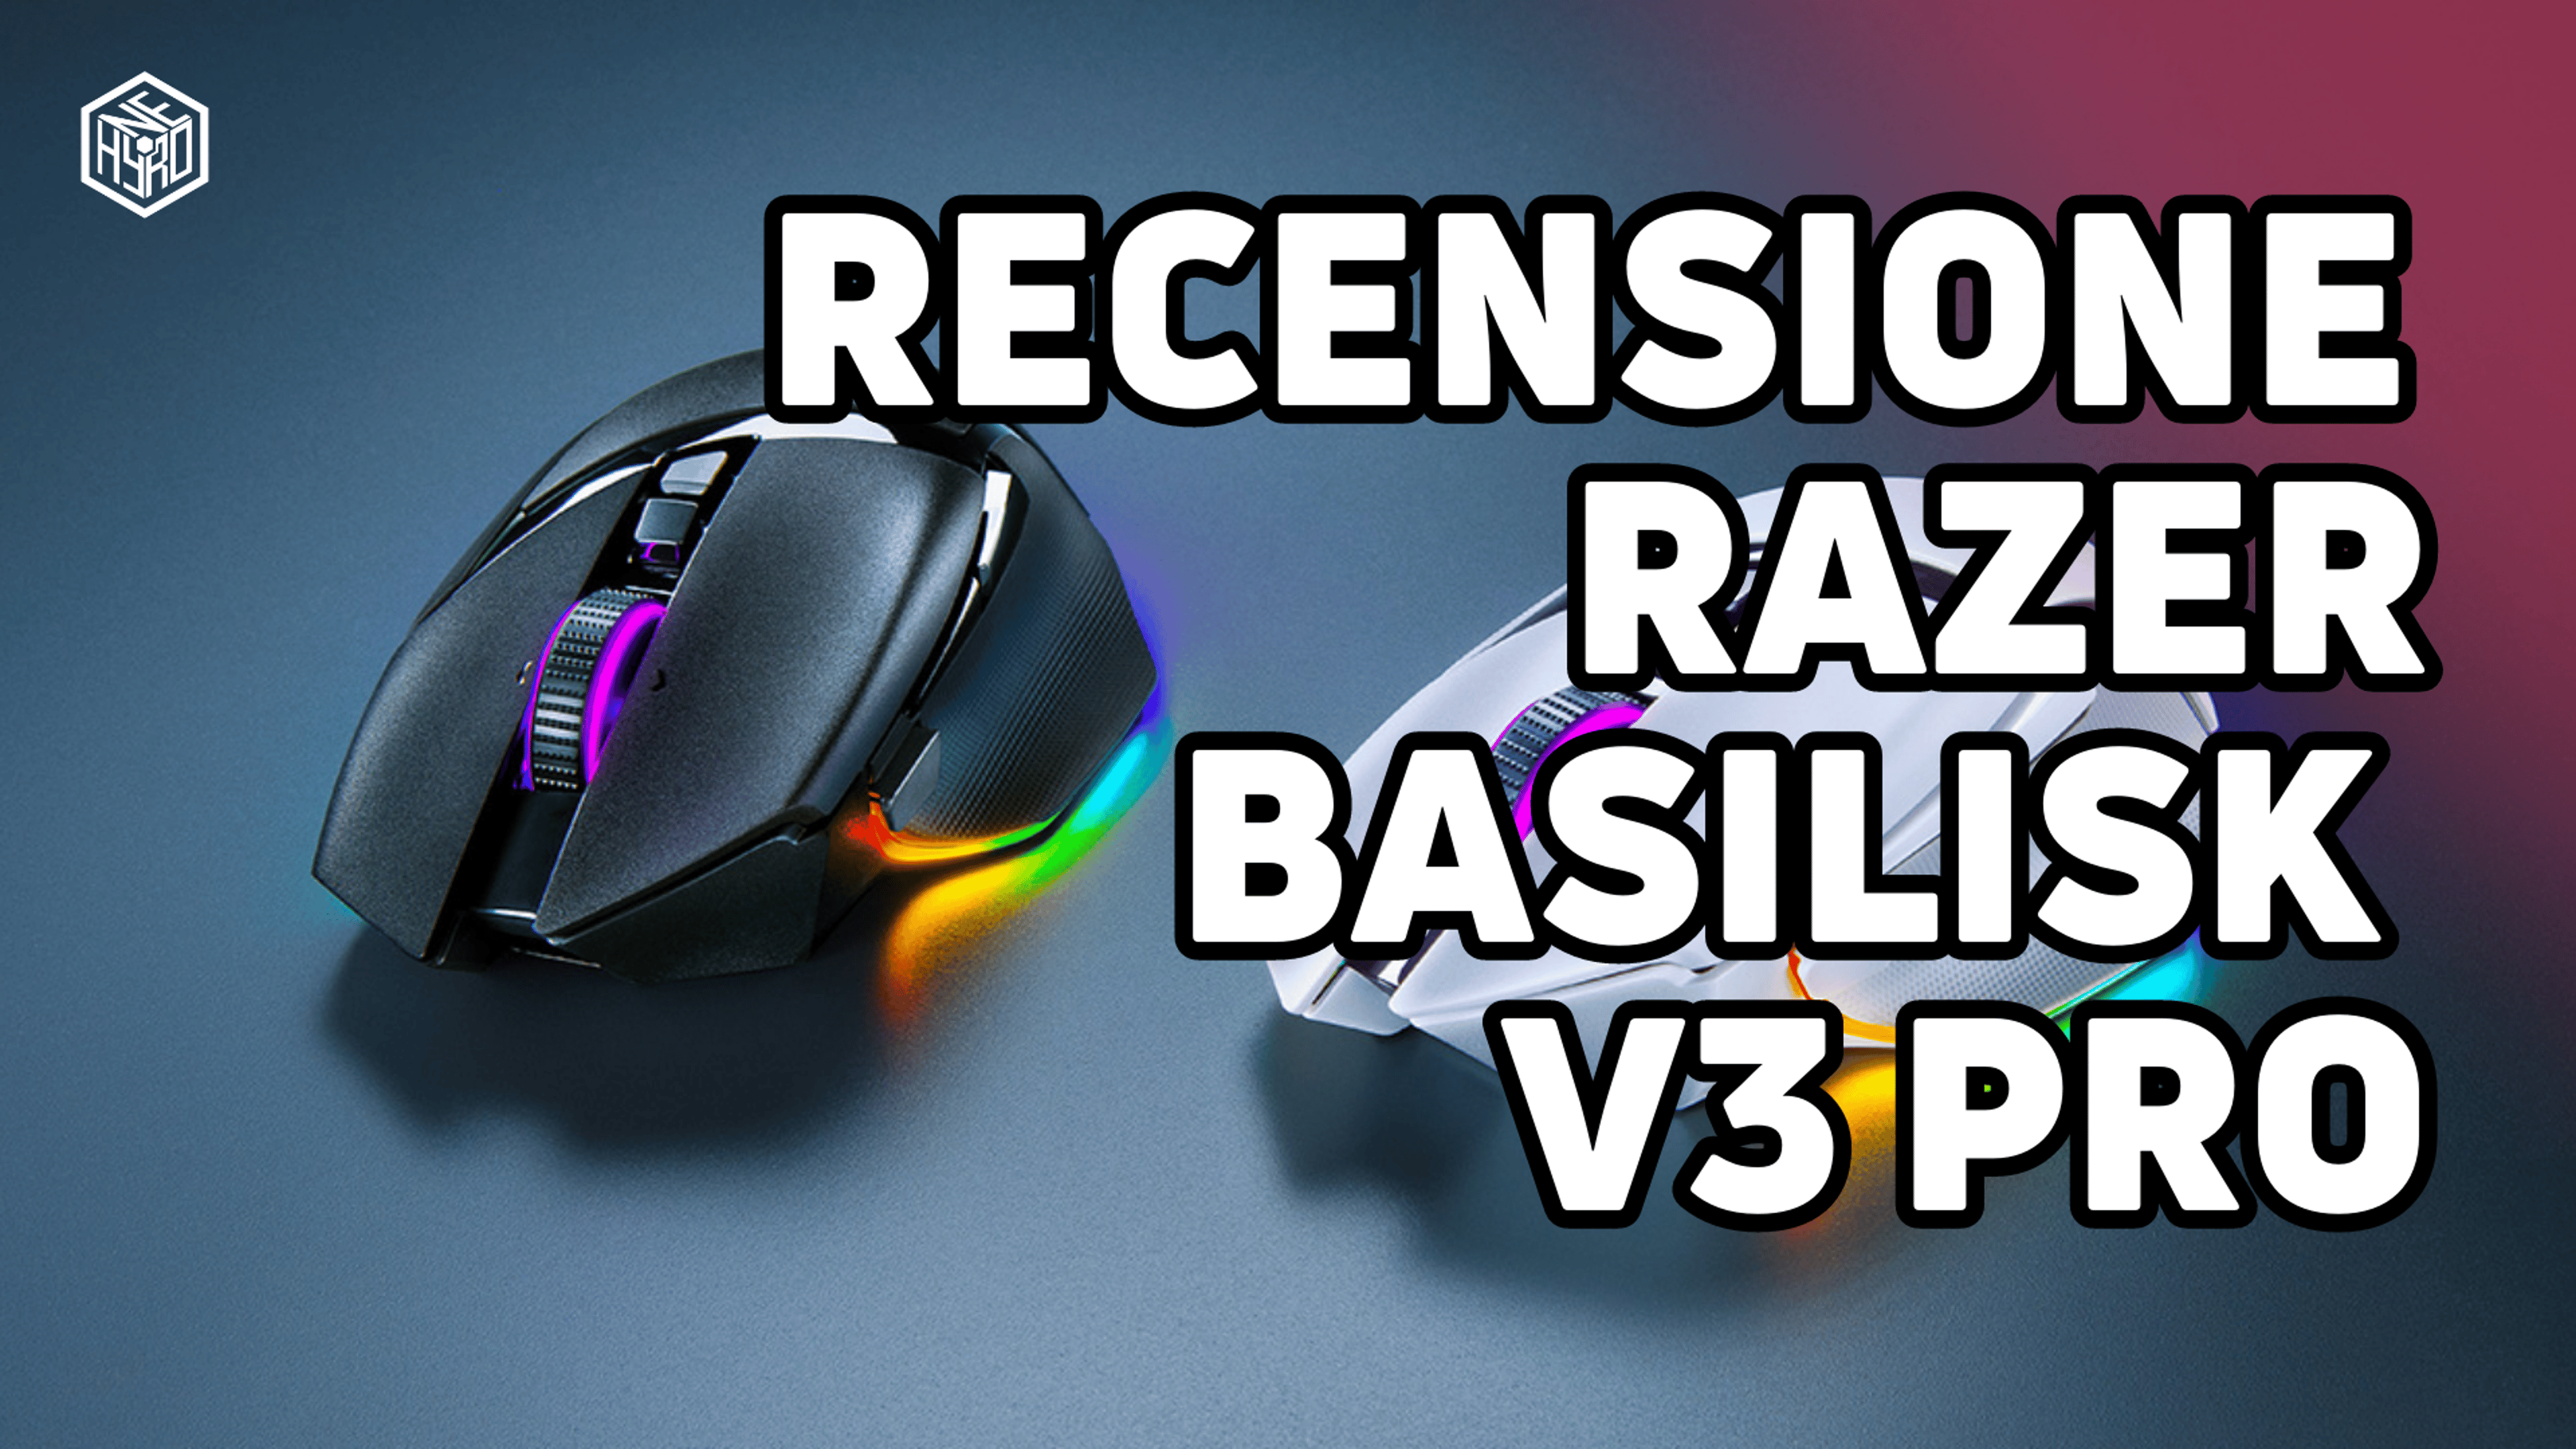 Razer Basilisk V3 Pro, Recensione – Il mouse per giocare e lavorare